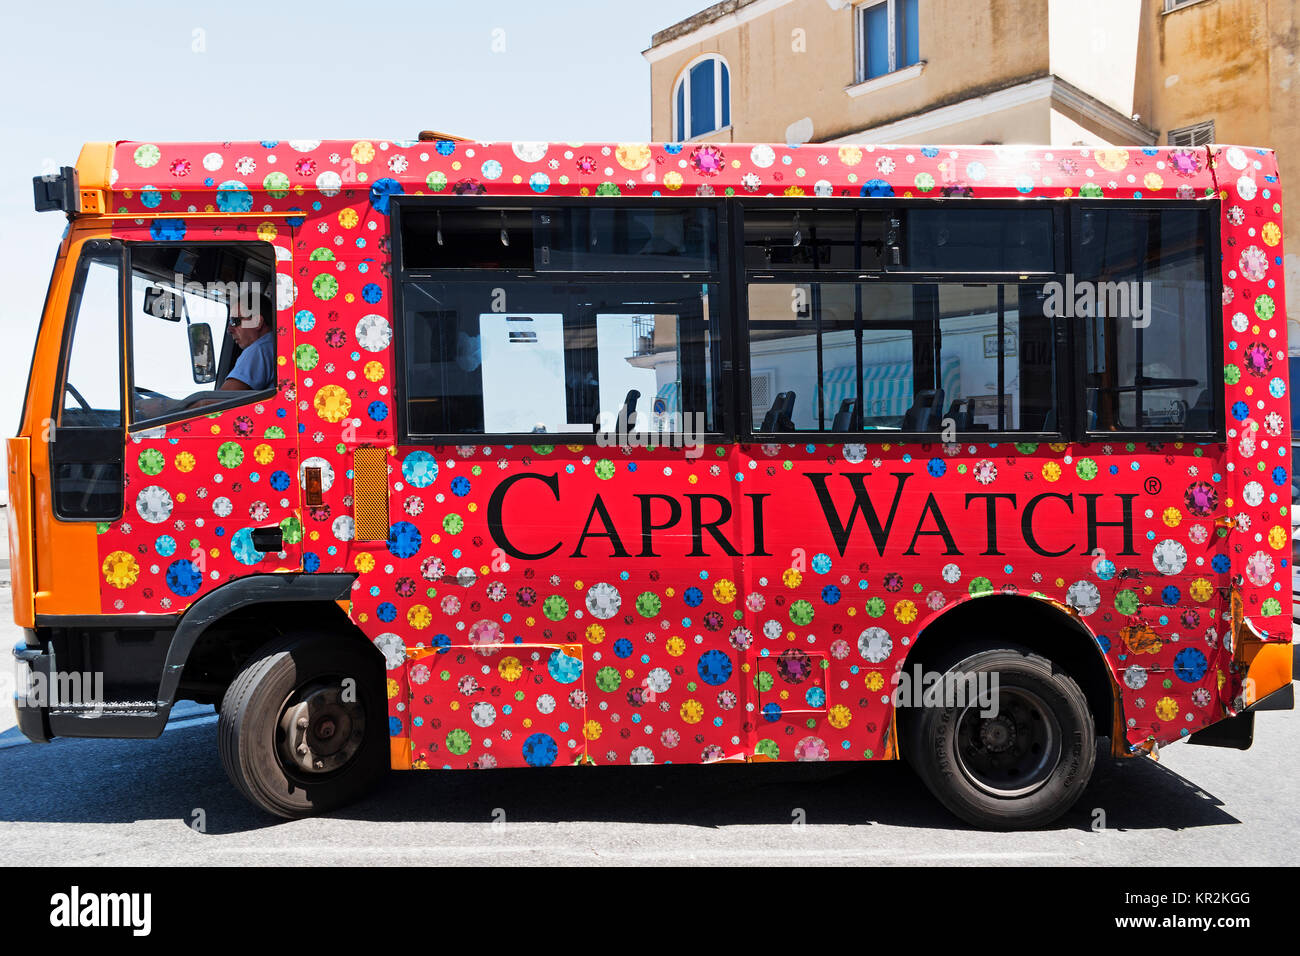 Bus local sur l'île de Capri Capri la célèbre publicité watch. Banque D'Images